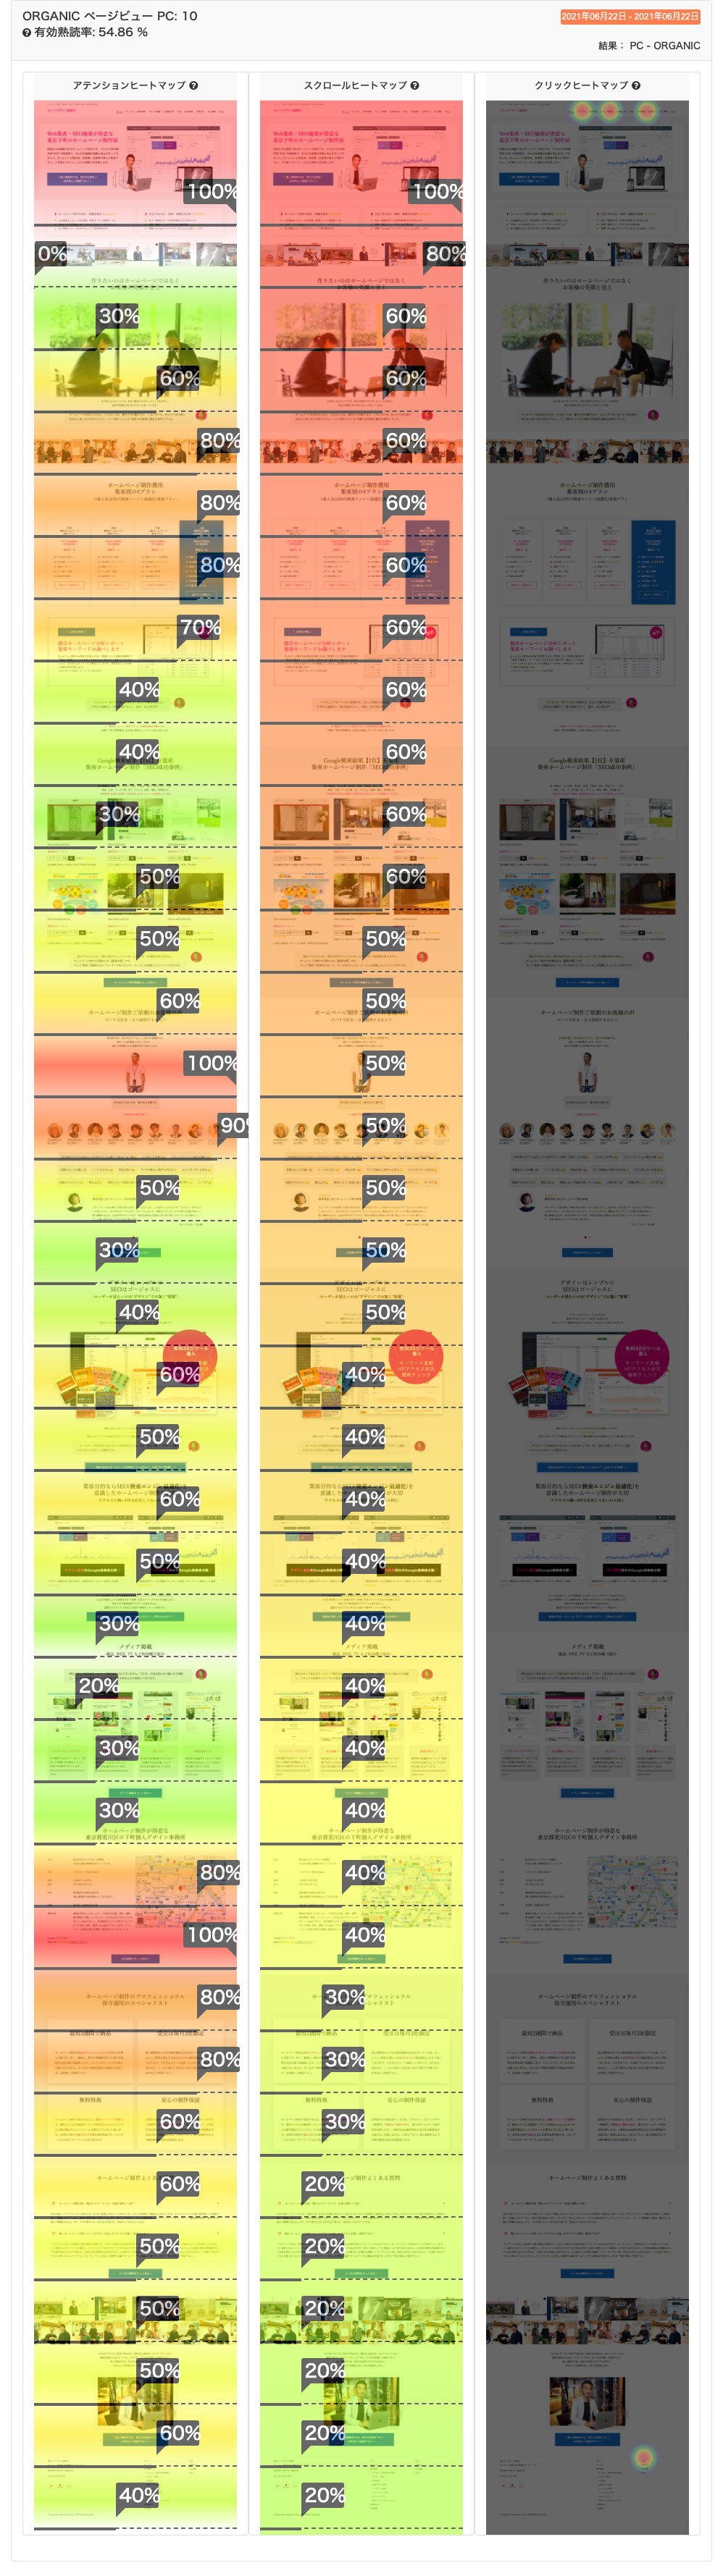 2.webマーケティング｜ホームページ改善1 (ヒートマップ）の結果